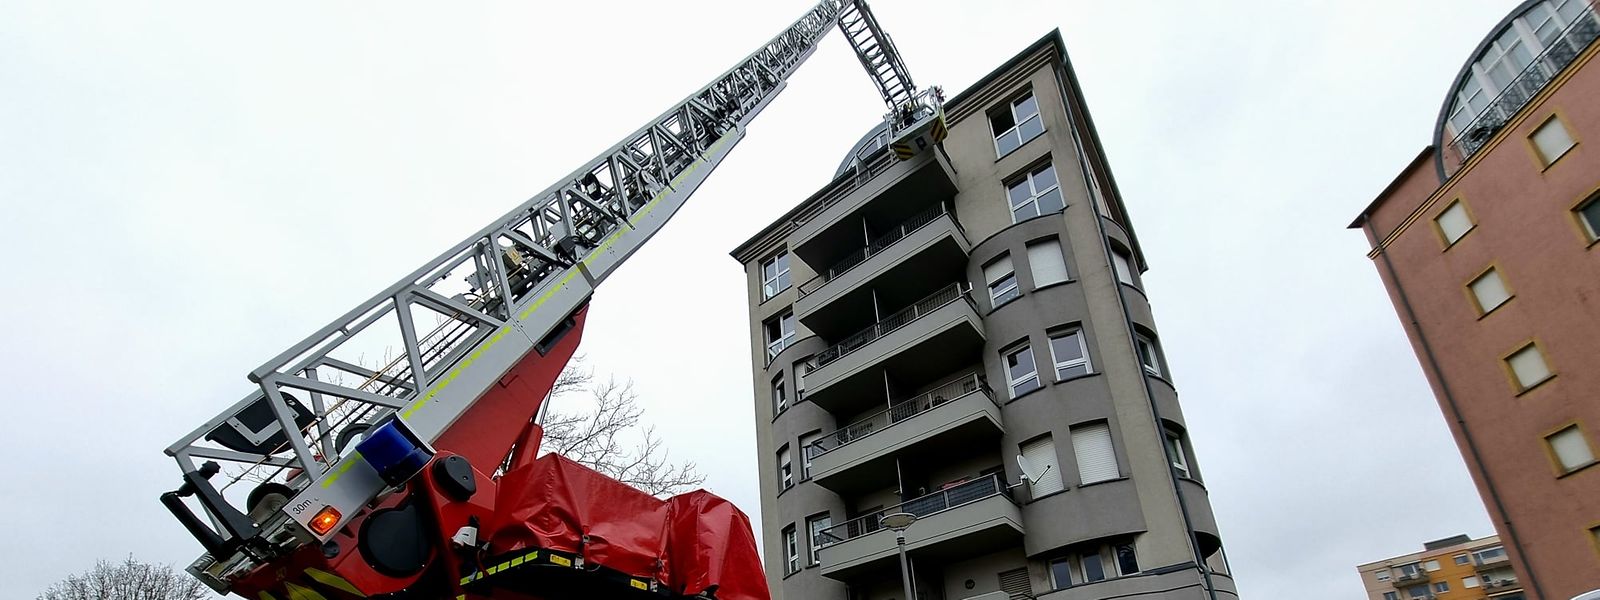 Um homem refugiou-se numa varanda do sexto andar e teve de ser retirado com a ajuda de uma escada dos bombeiros.